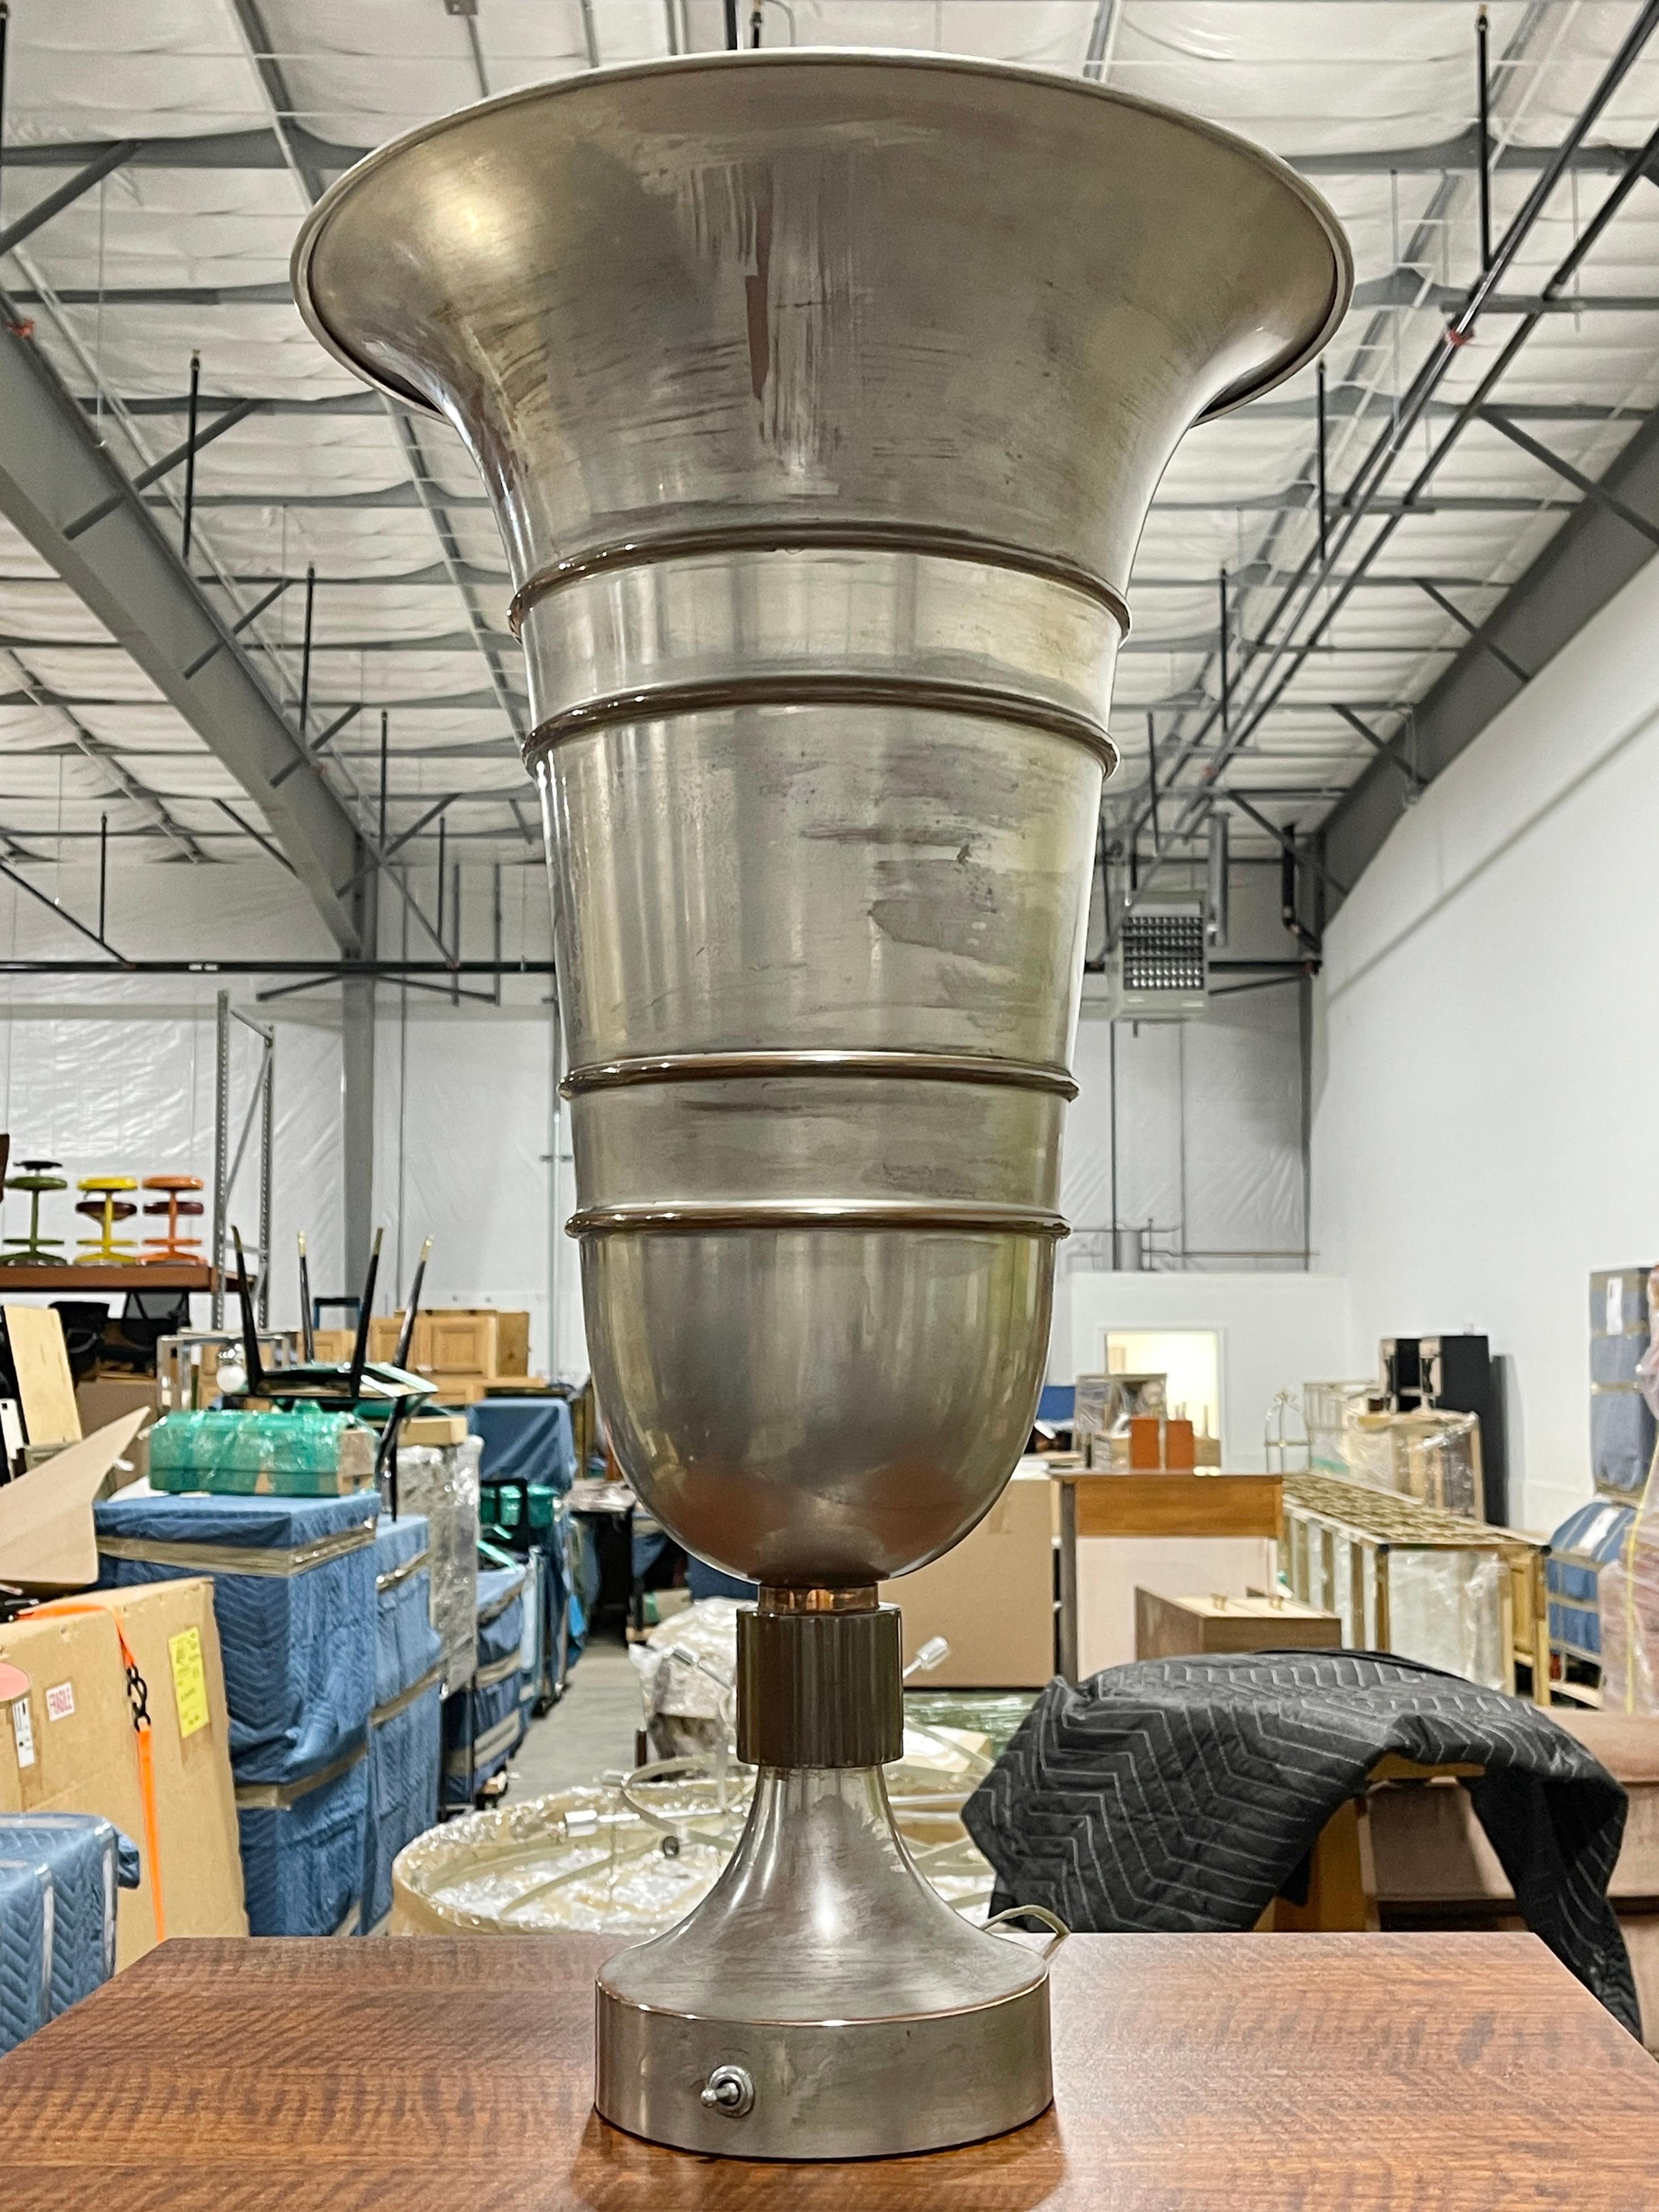 Magnifique lampe à vase en forme de trompette en métal Art Déco italien, aux proportions démesurées, comme on pourrait en trouver dans le salon de 1ère classe d'un paquebot des années 30 tel que le Rex ou le Normadie.
Le processus de filage